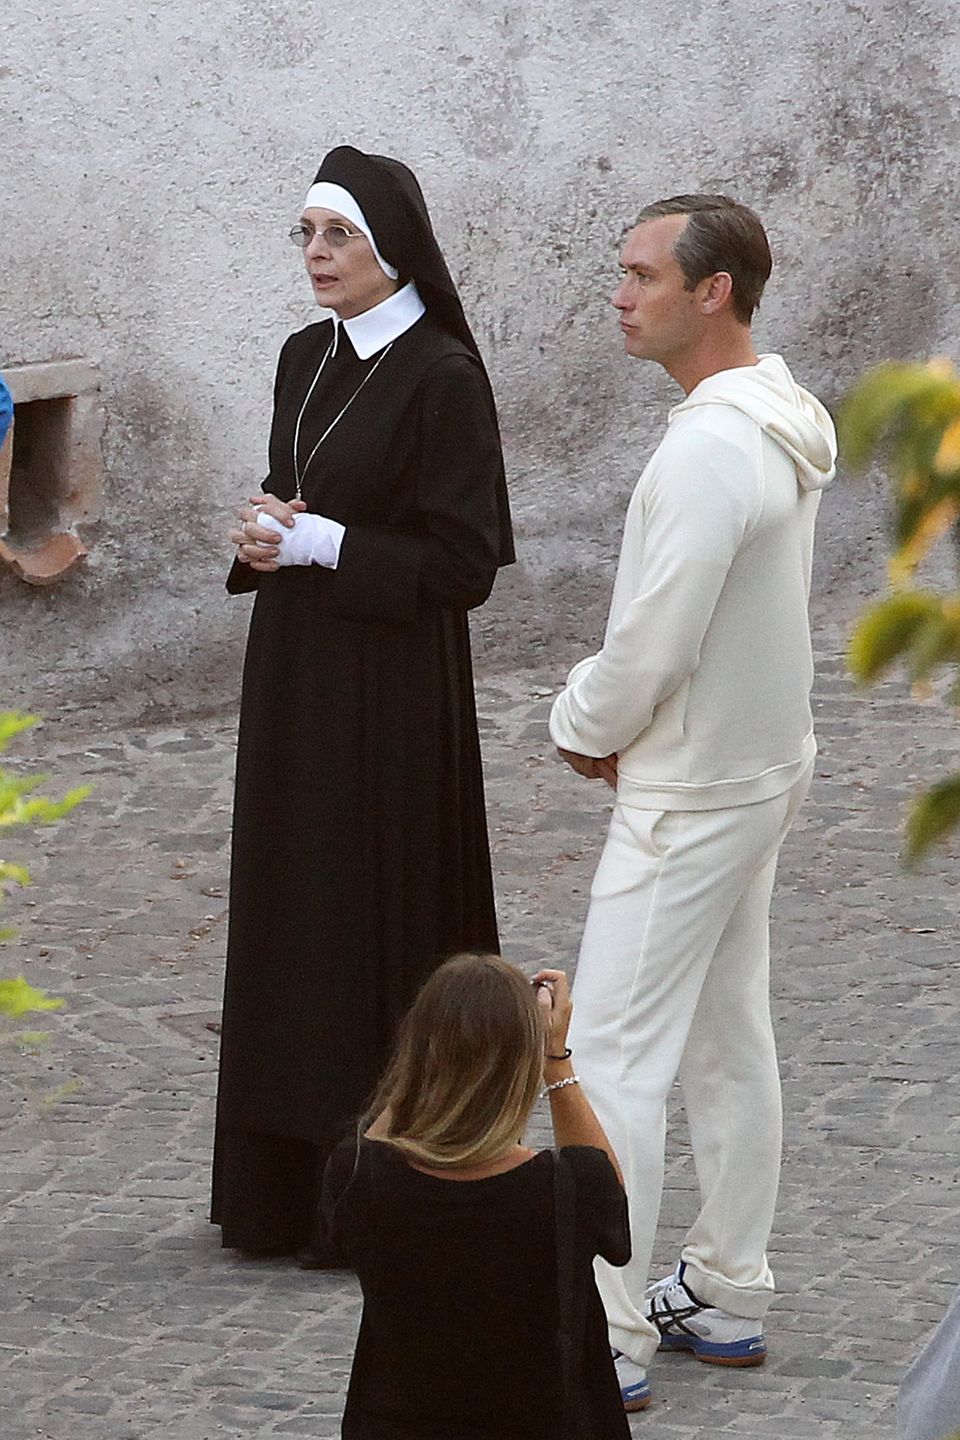 5. August 2015: Diane Keaton steht als Nonne und Jude Law steht als Papst für ein TV-Drama vor der Kamera.